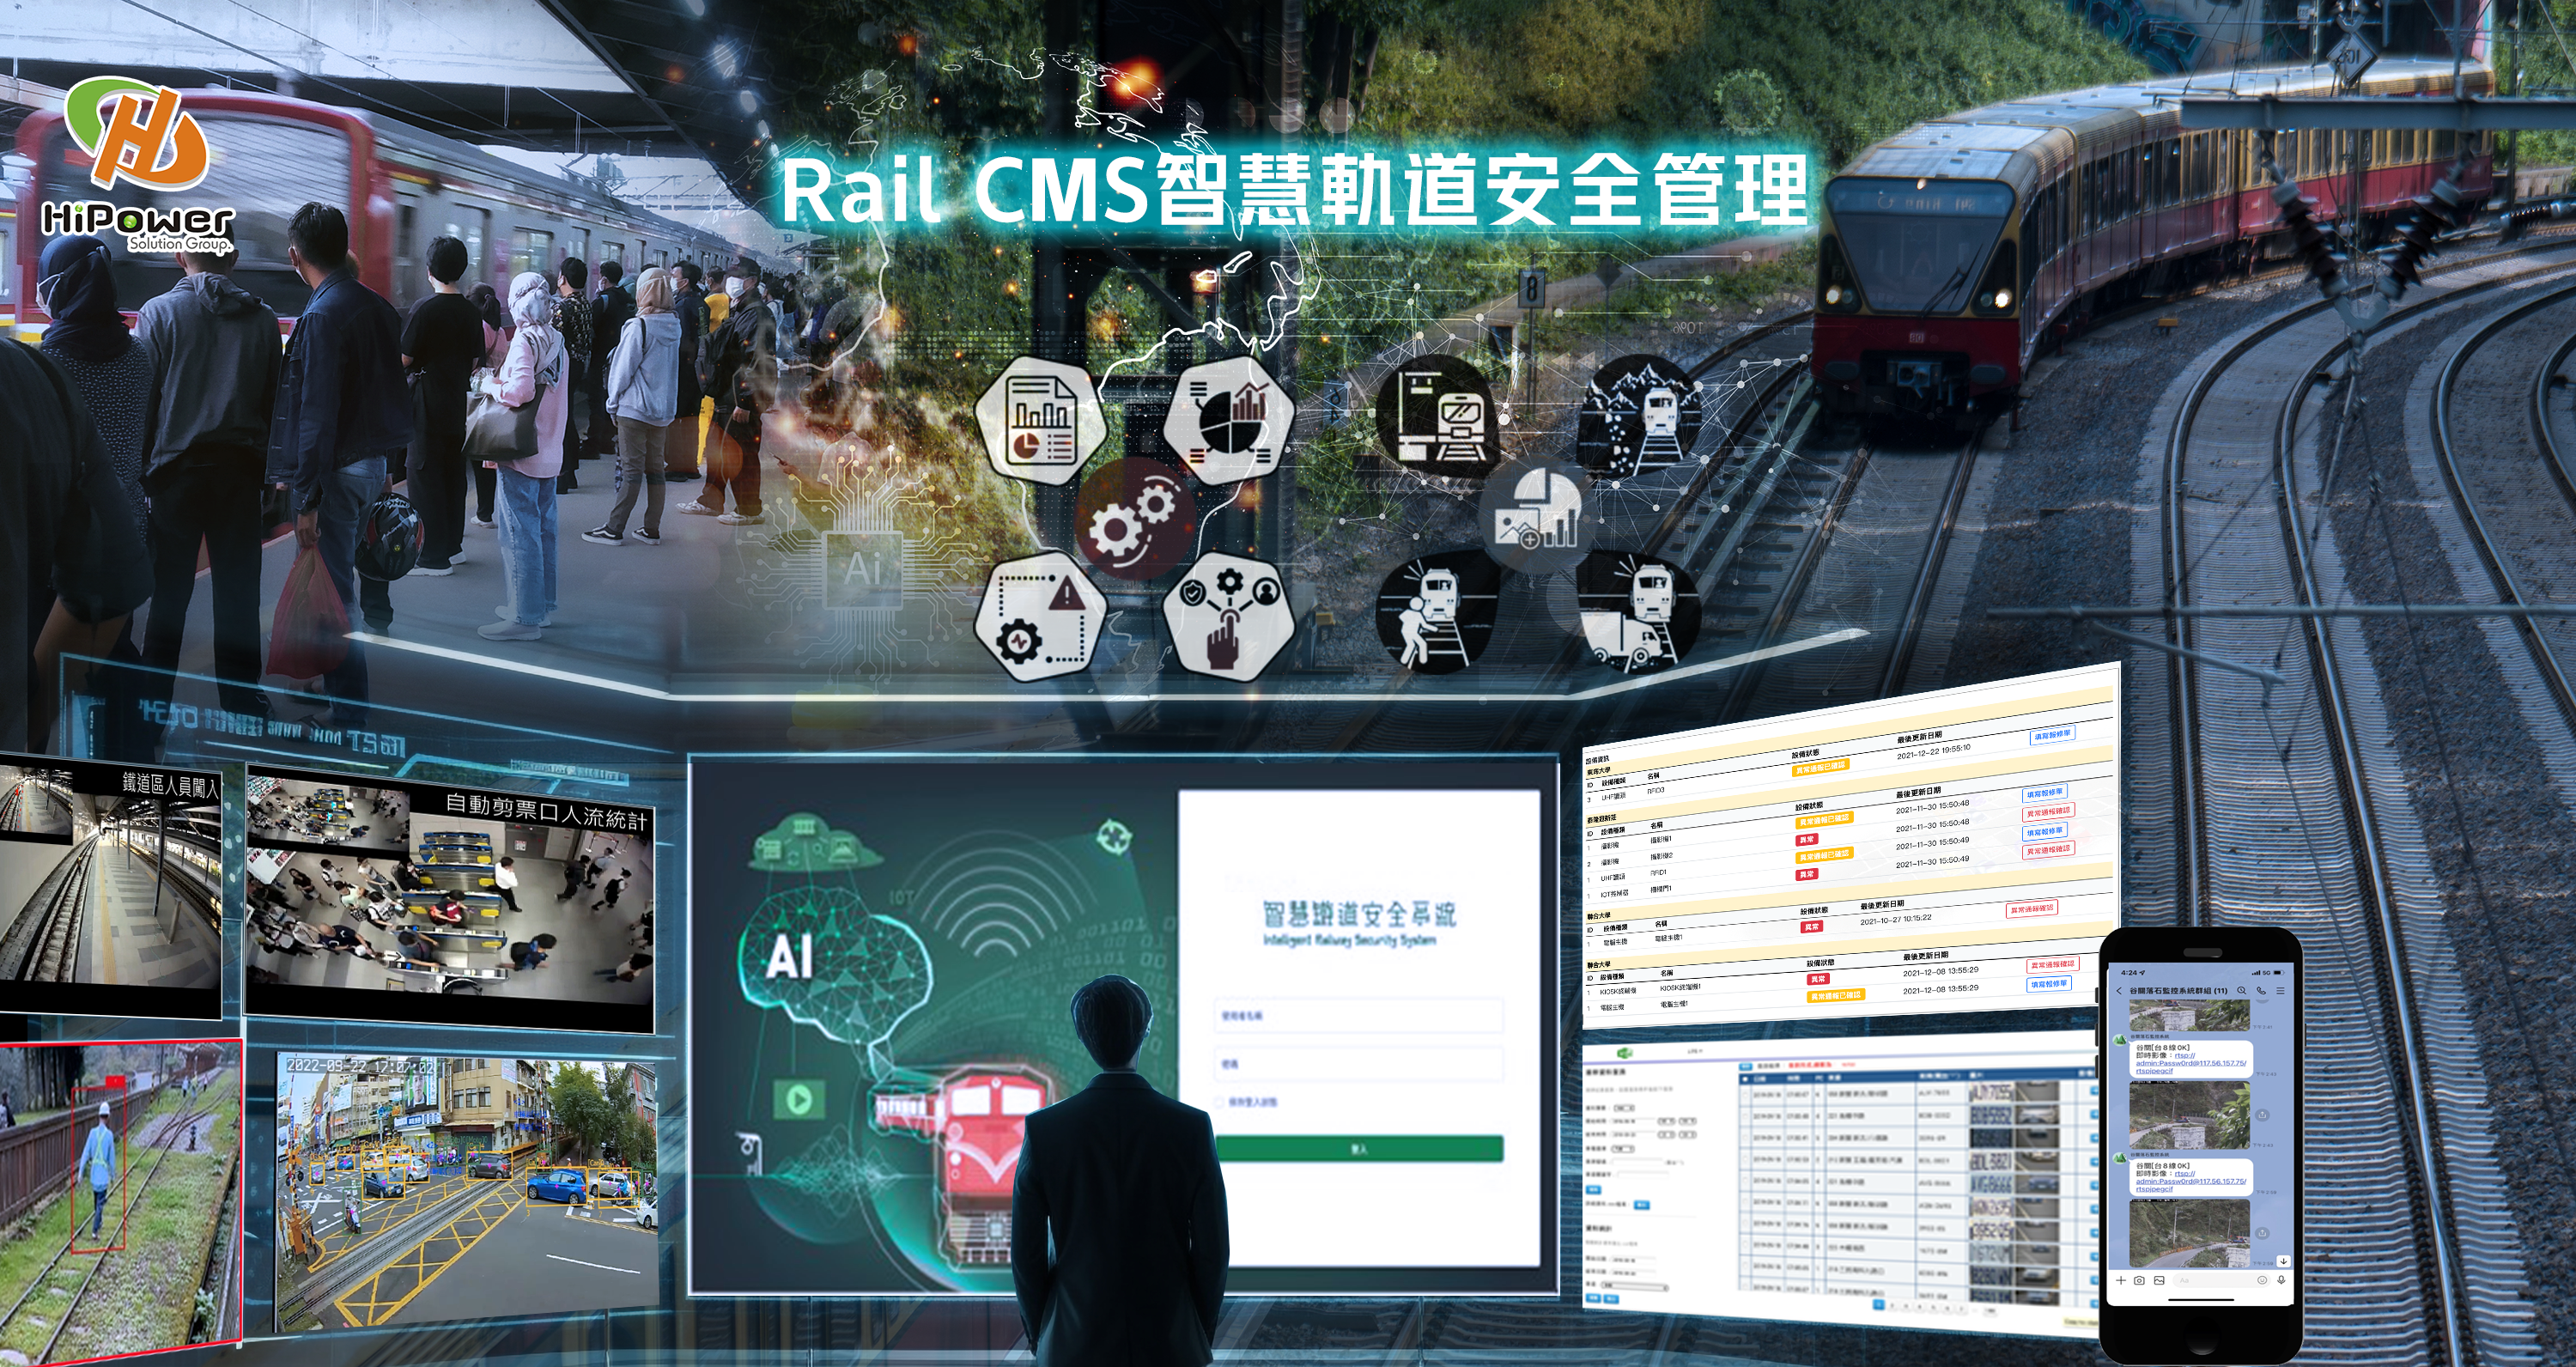 Rail CMS智慧軌道安全管理